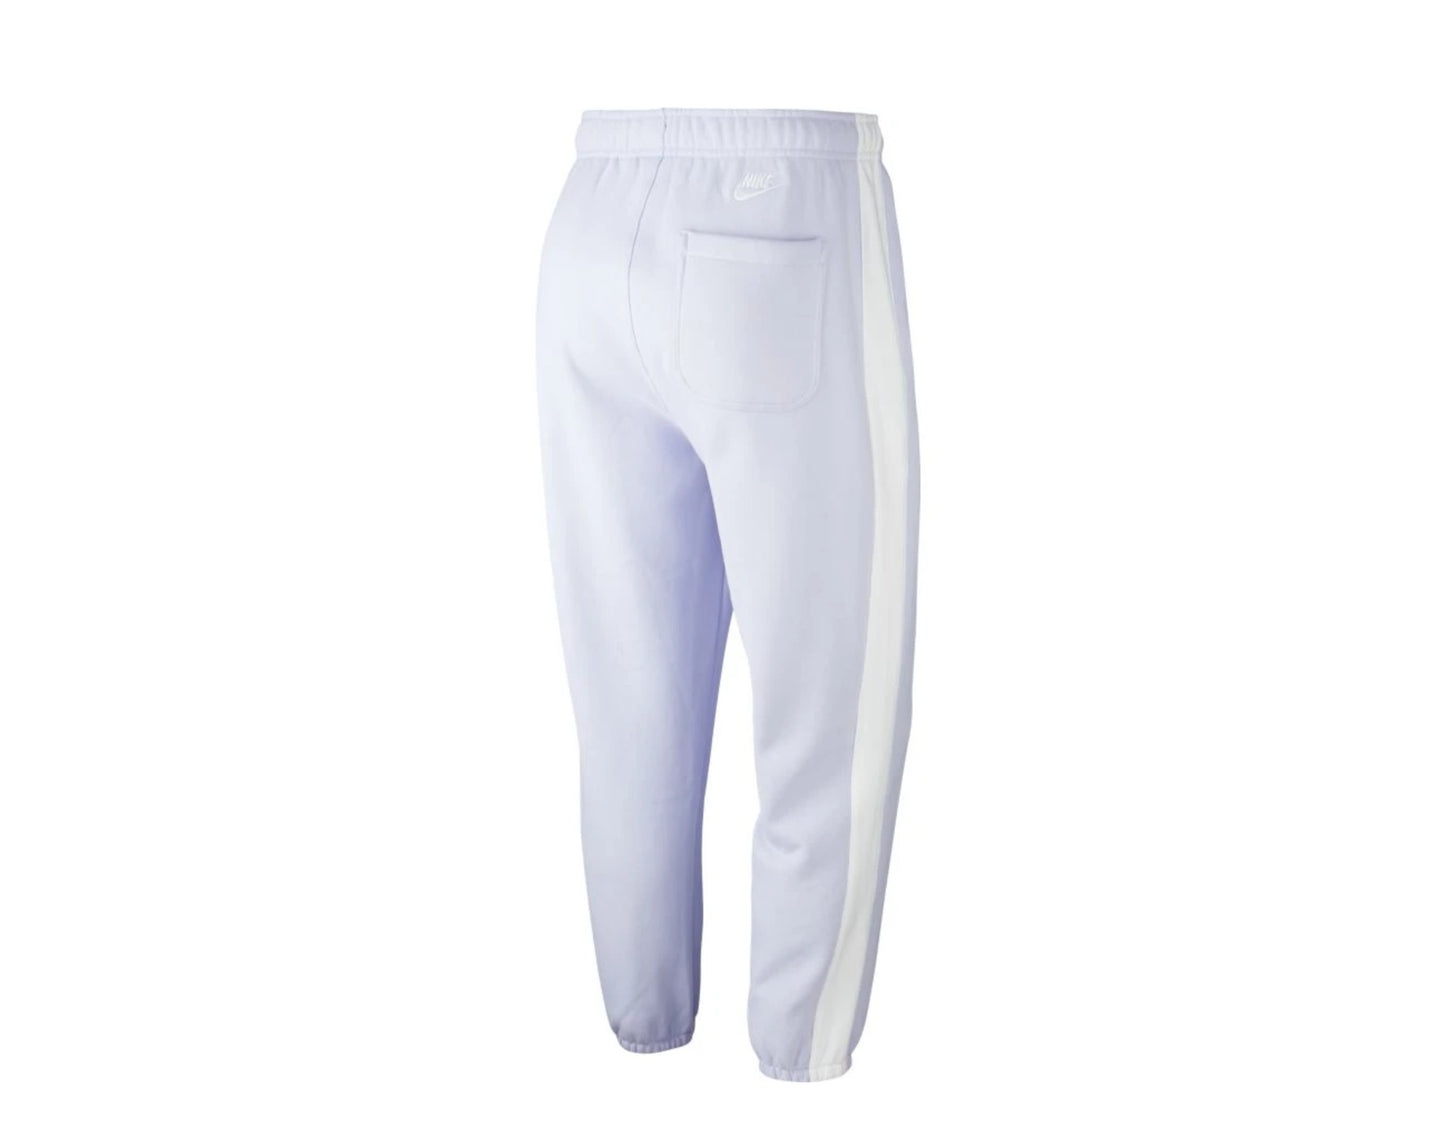 Nike Sportswear Just Do It Lavender Mist/White Men's Sweatpants BV5535-539